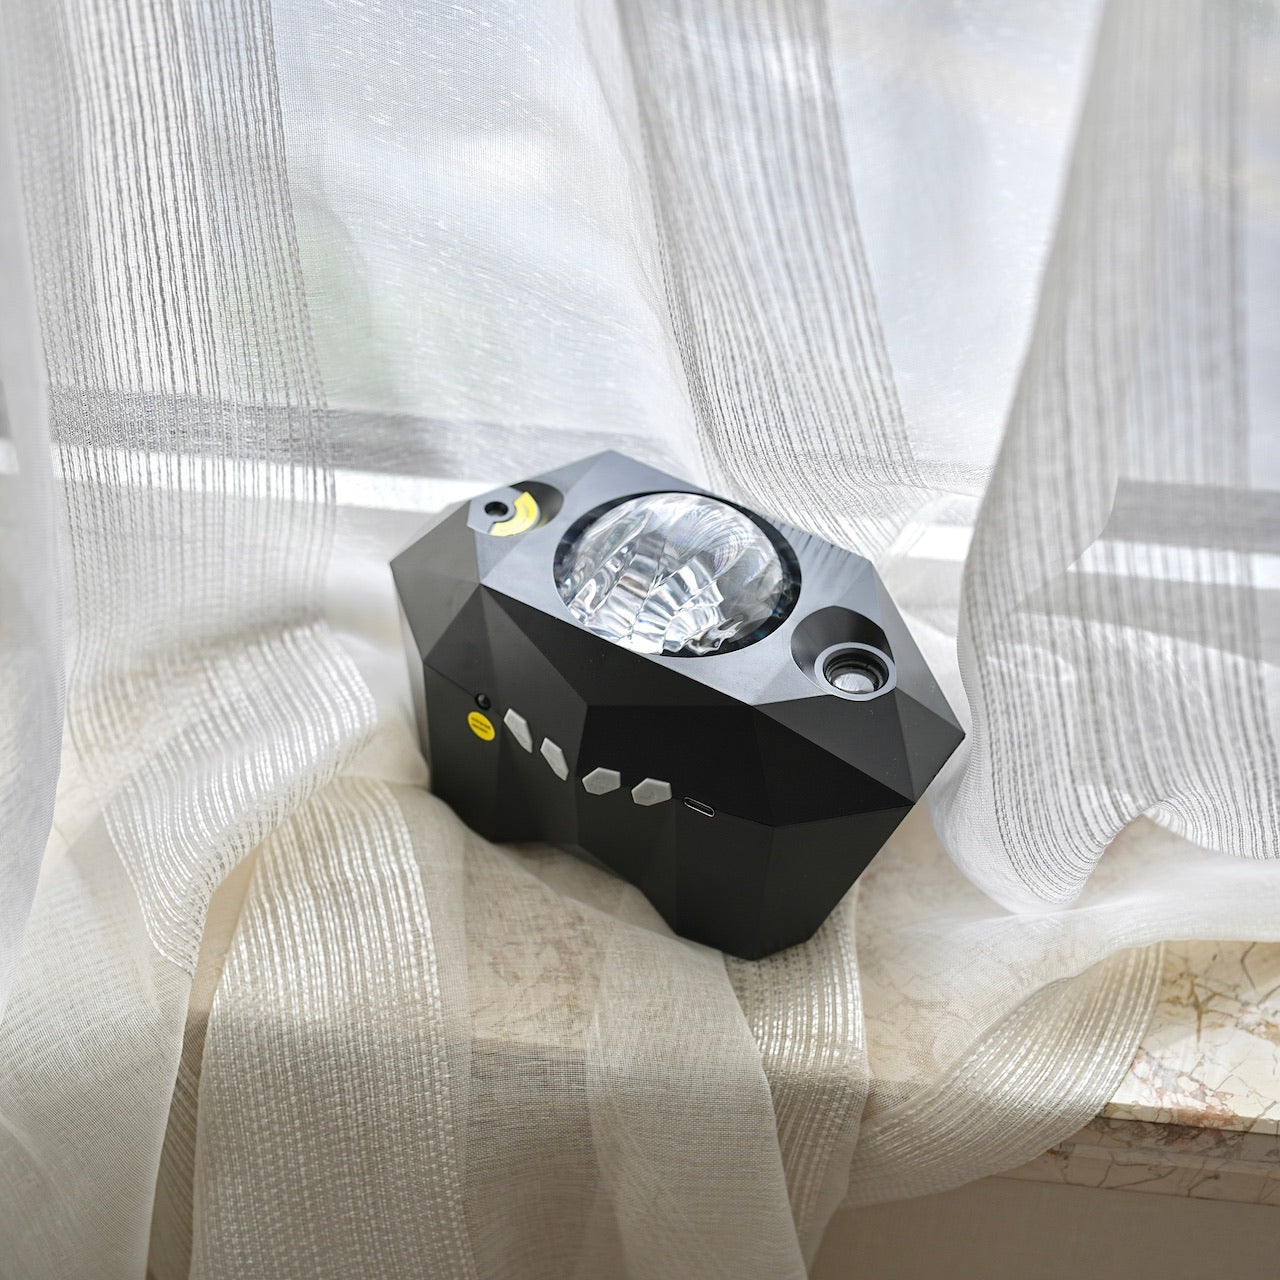 「夜空と眠る」プロジェクターランプ&Bluetoothスピーカー – gaacal